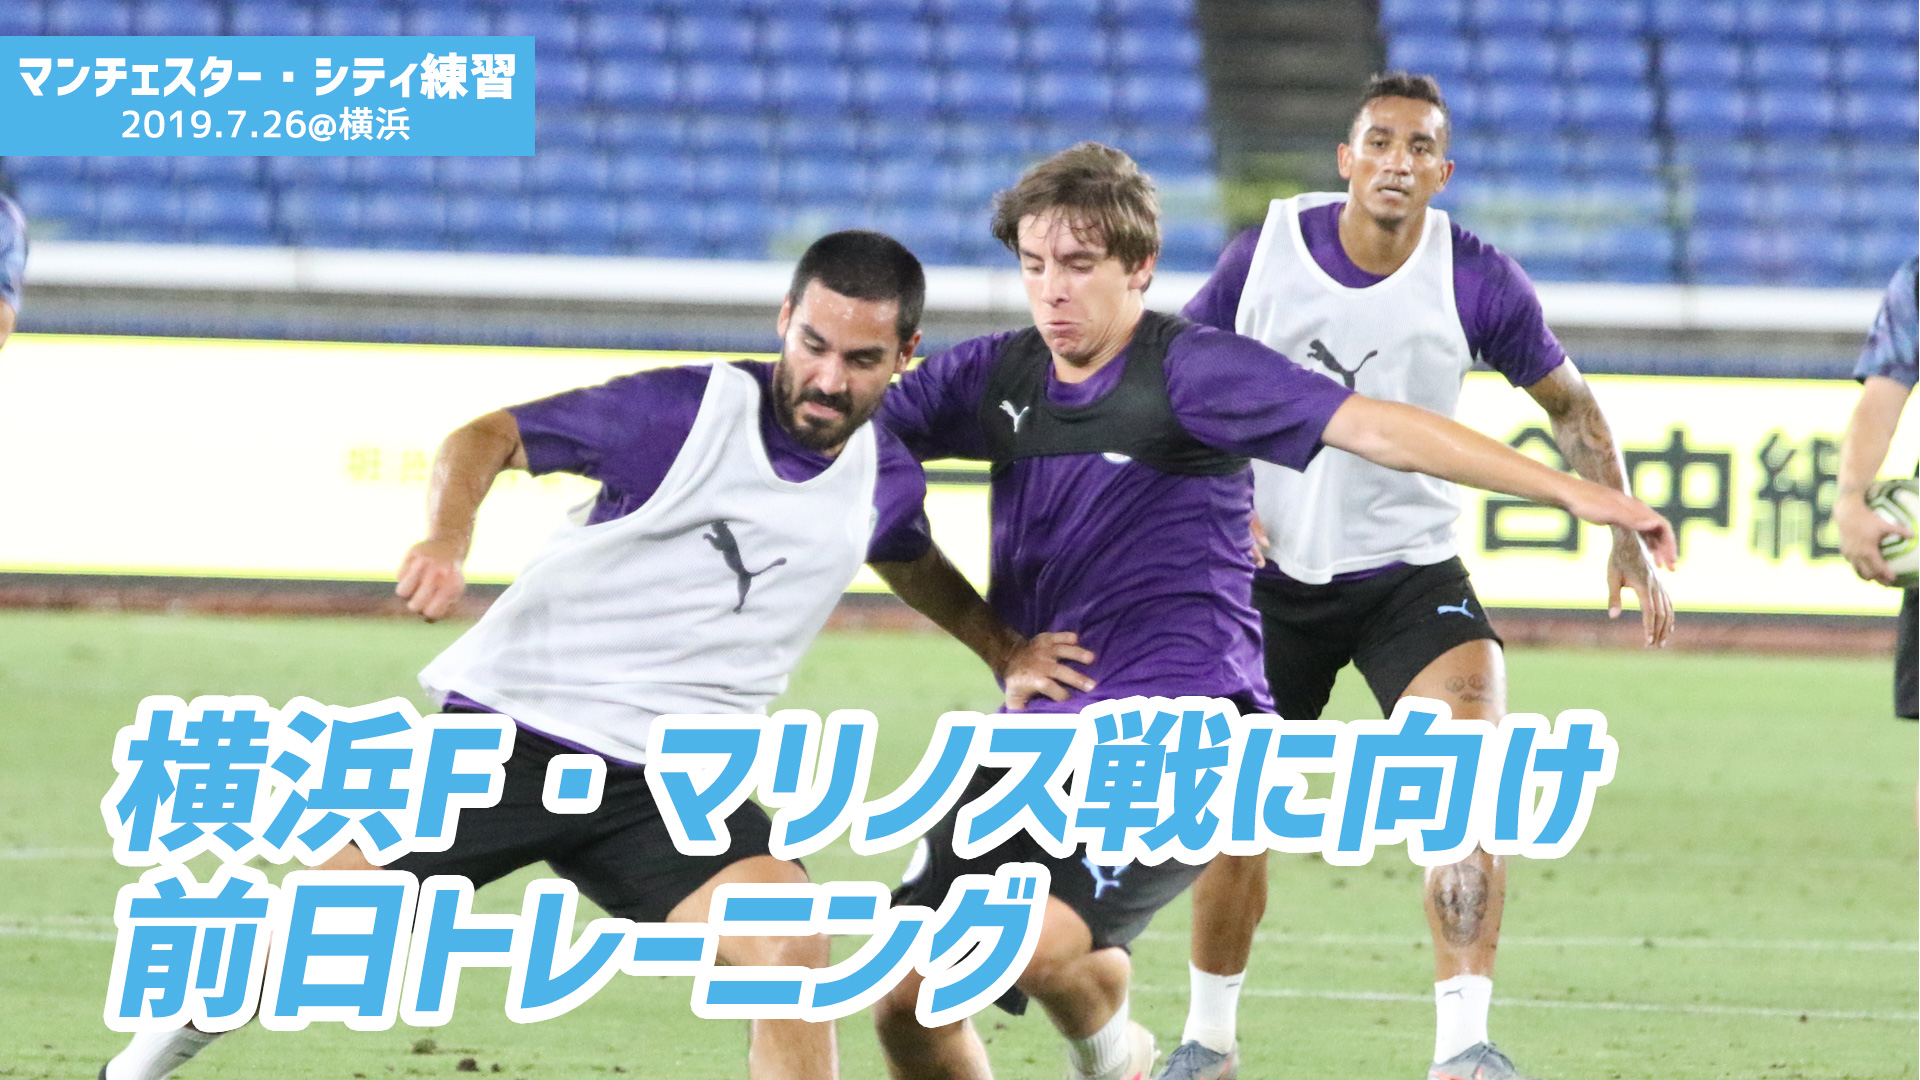 動画 7 26 マンチェスター シティが横浜f マリノス戦に向けてトレーニング スポーツナビ 超worldサッカー